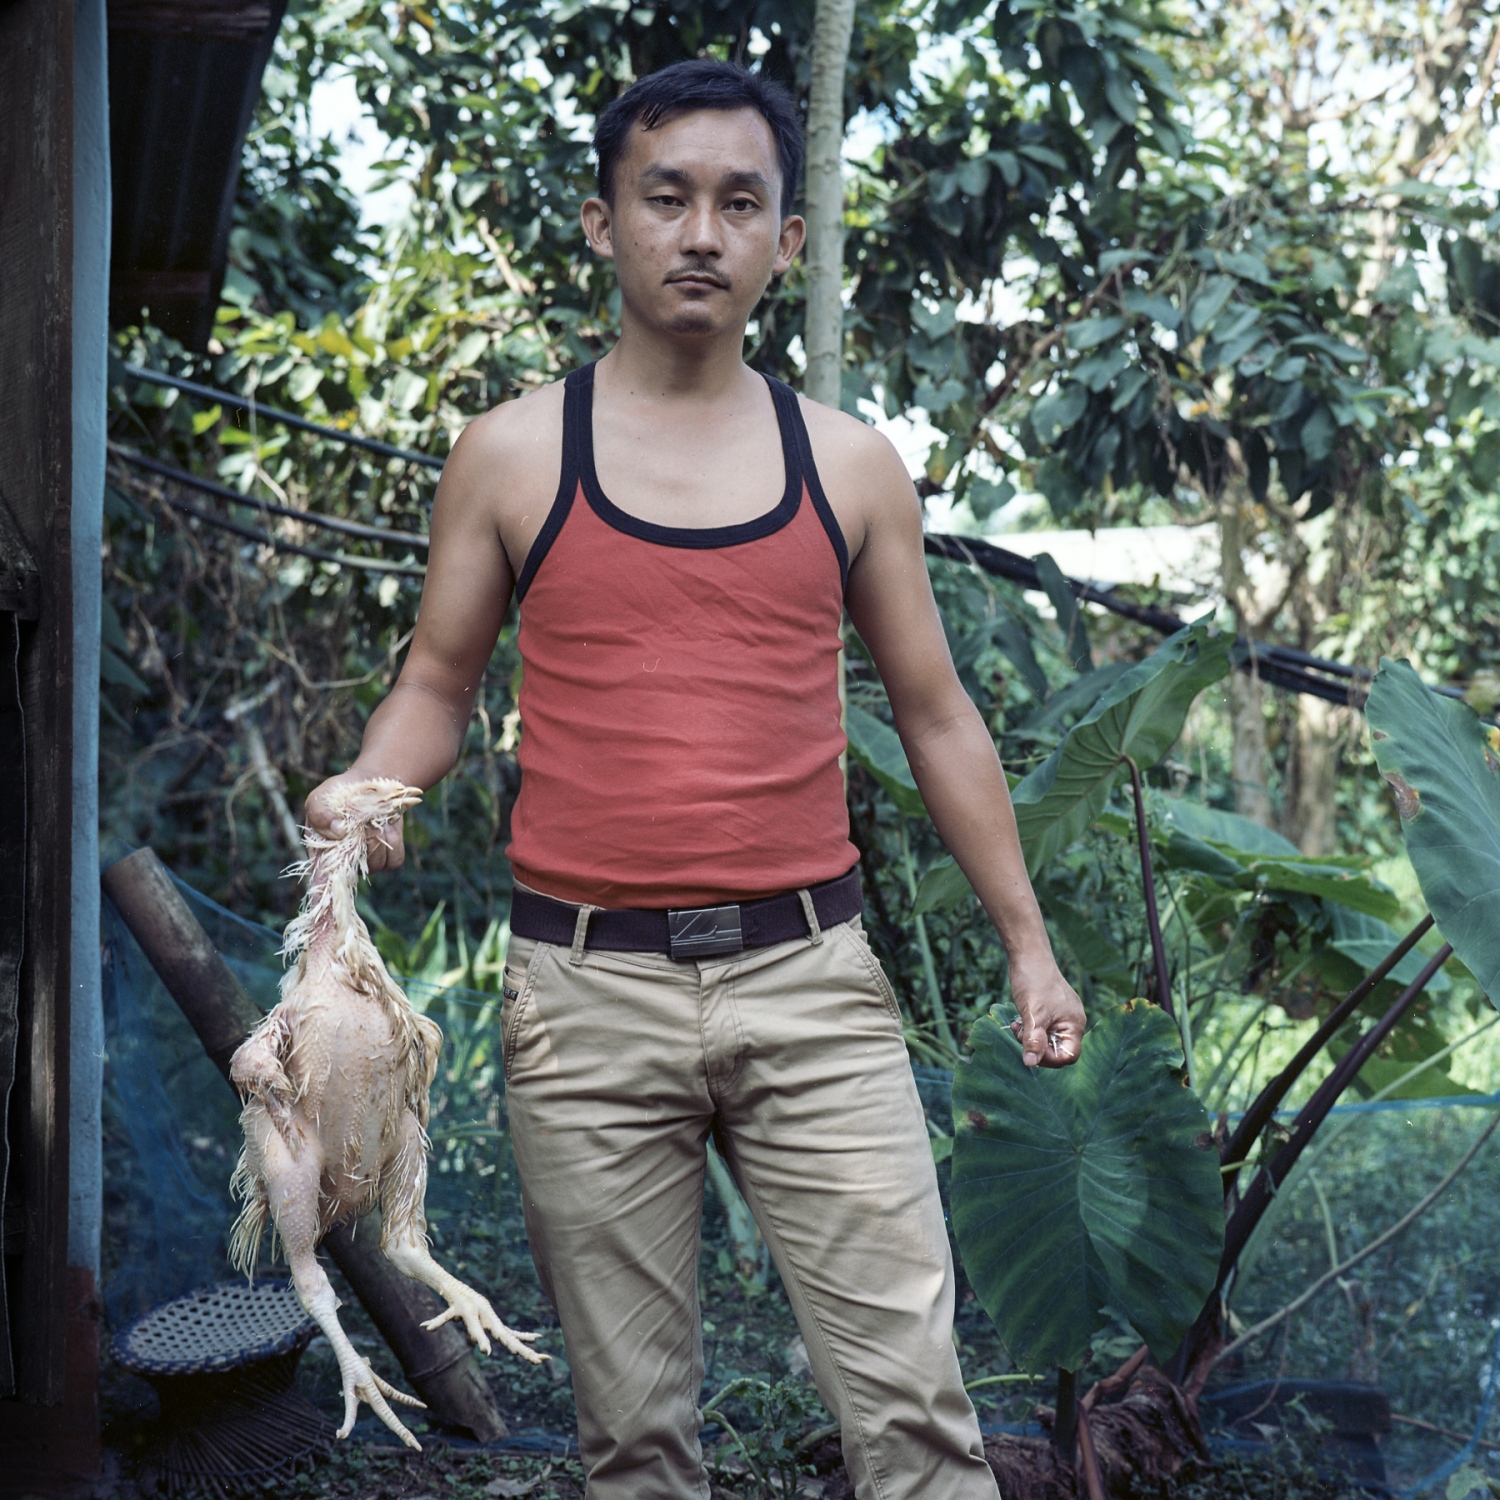  Salam Enao Meitei, 30. Thanga Tongbram Leikai, Manipur Salam Enao Meitei, a poultry owner, poses...